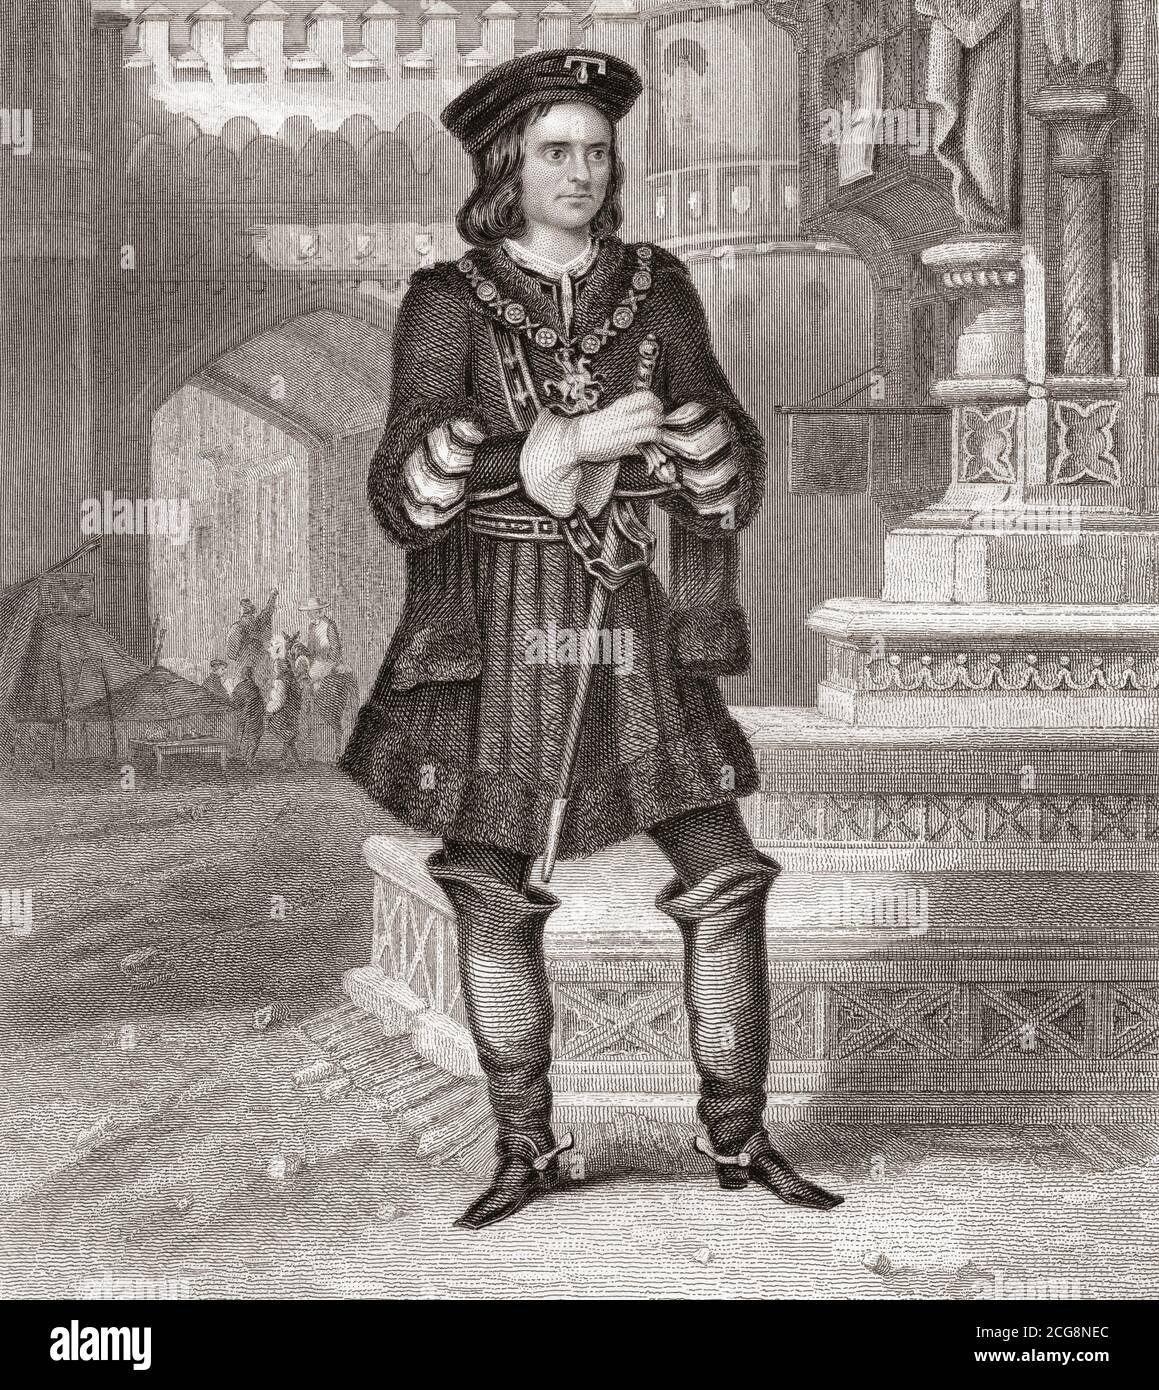 Charles Kean in der Rolle des Gloucester aus Shakespeares Stück Richard III. Charles John Kean, 1811 - 1868. Englischer Schauspieler. Stockfoto